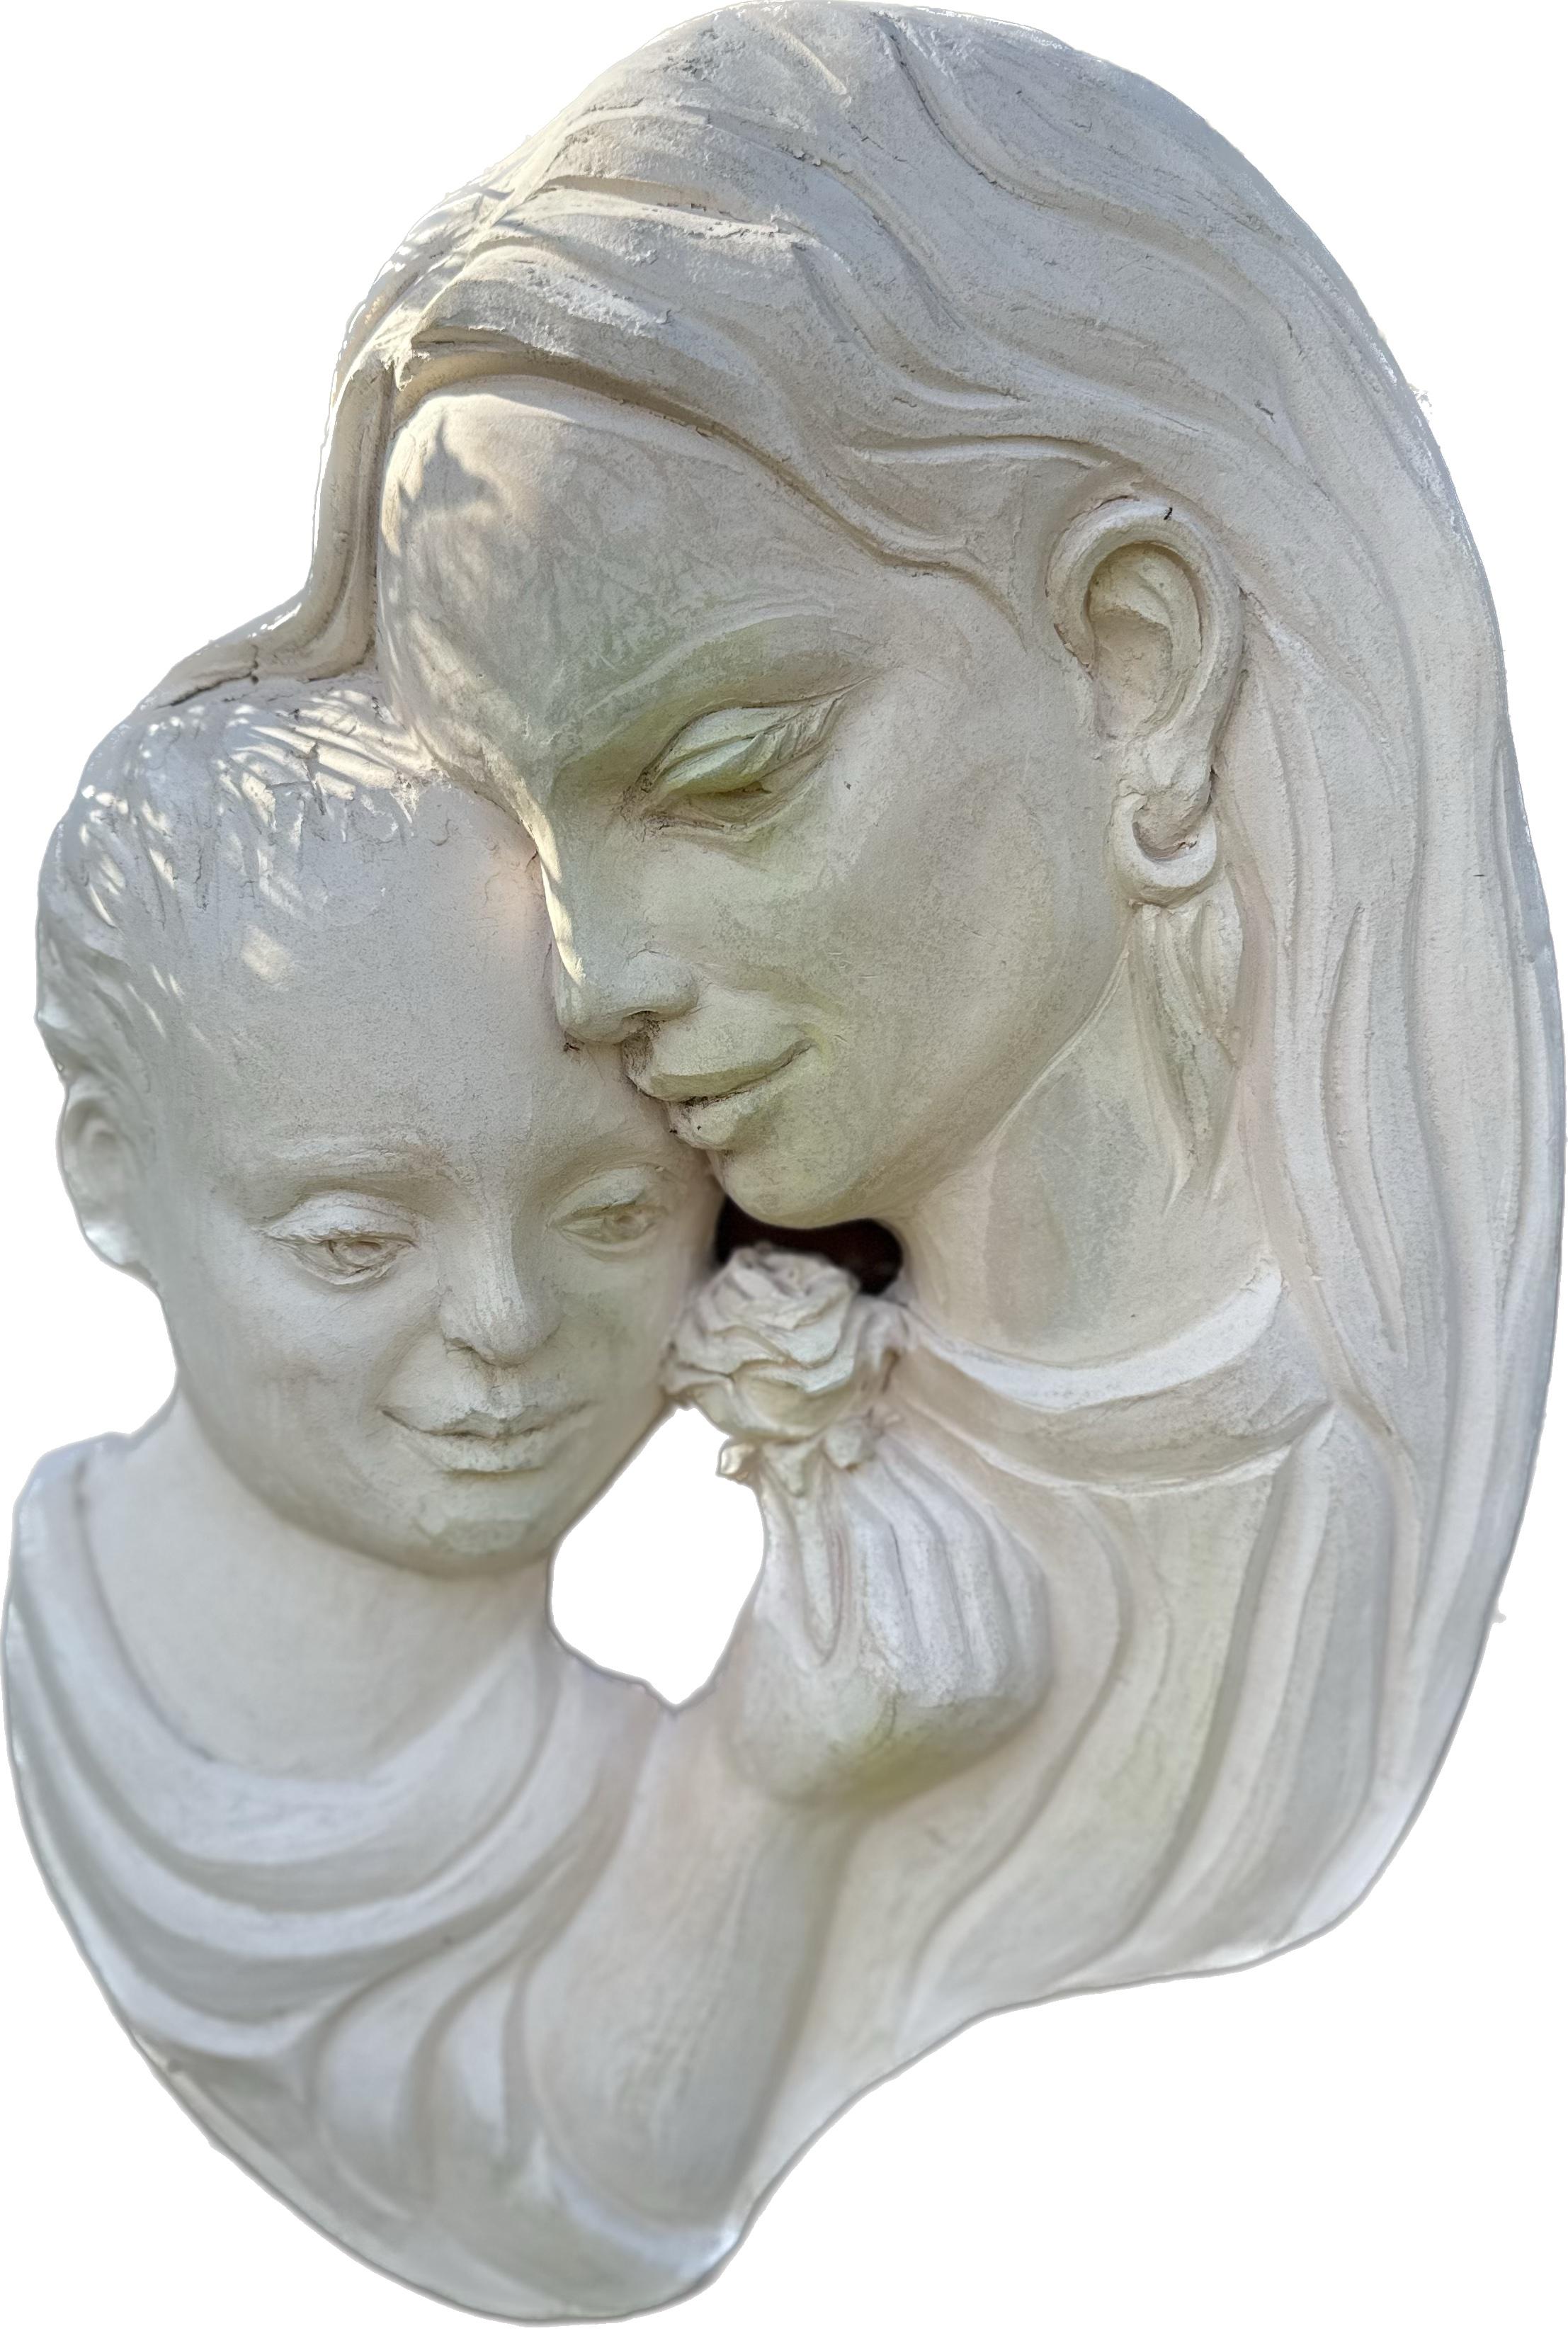 Karapet Balakeseryan  (Garo) Figurative Sculpture - Motherhood, Sculpture, Ceramic Handmade by Garo